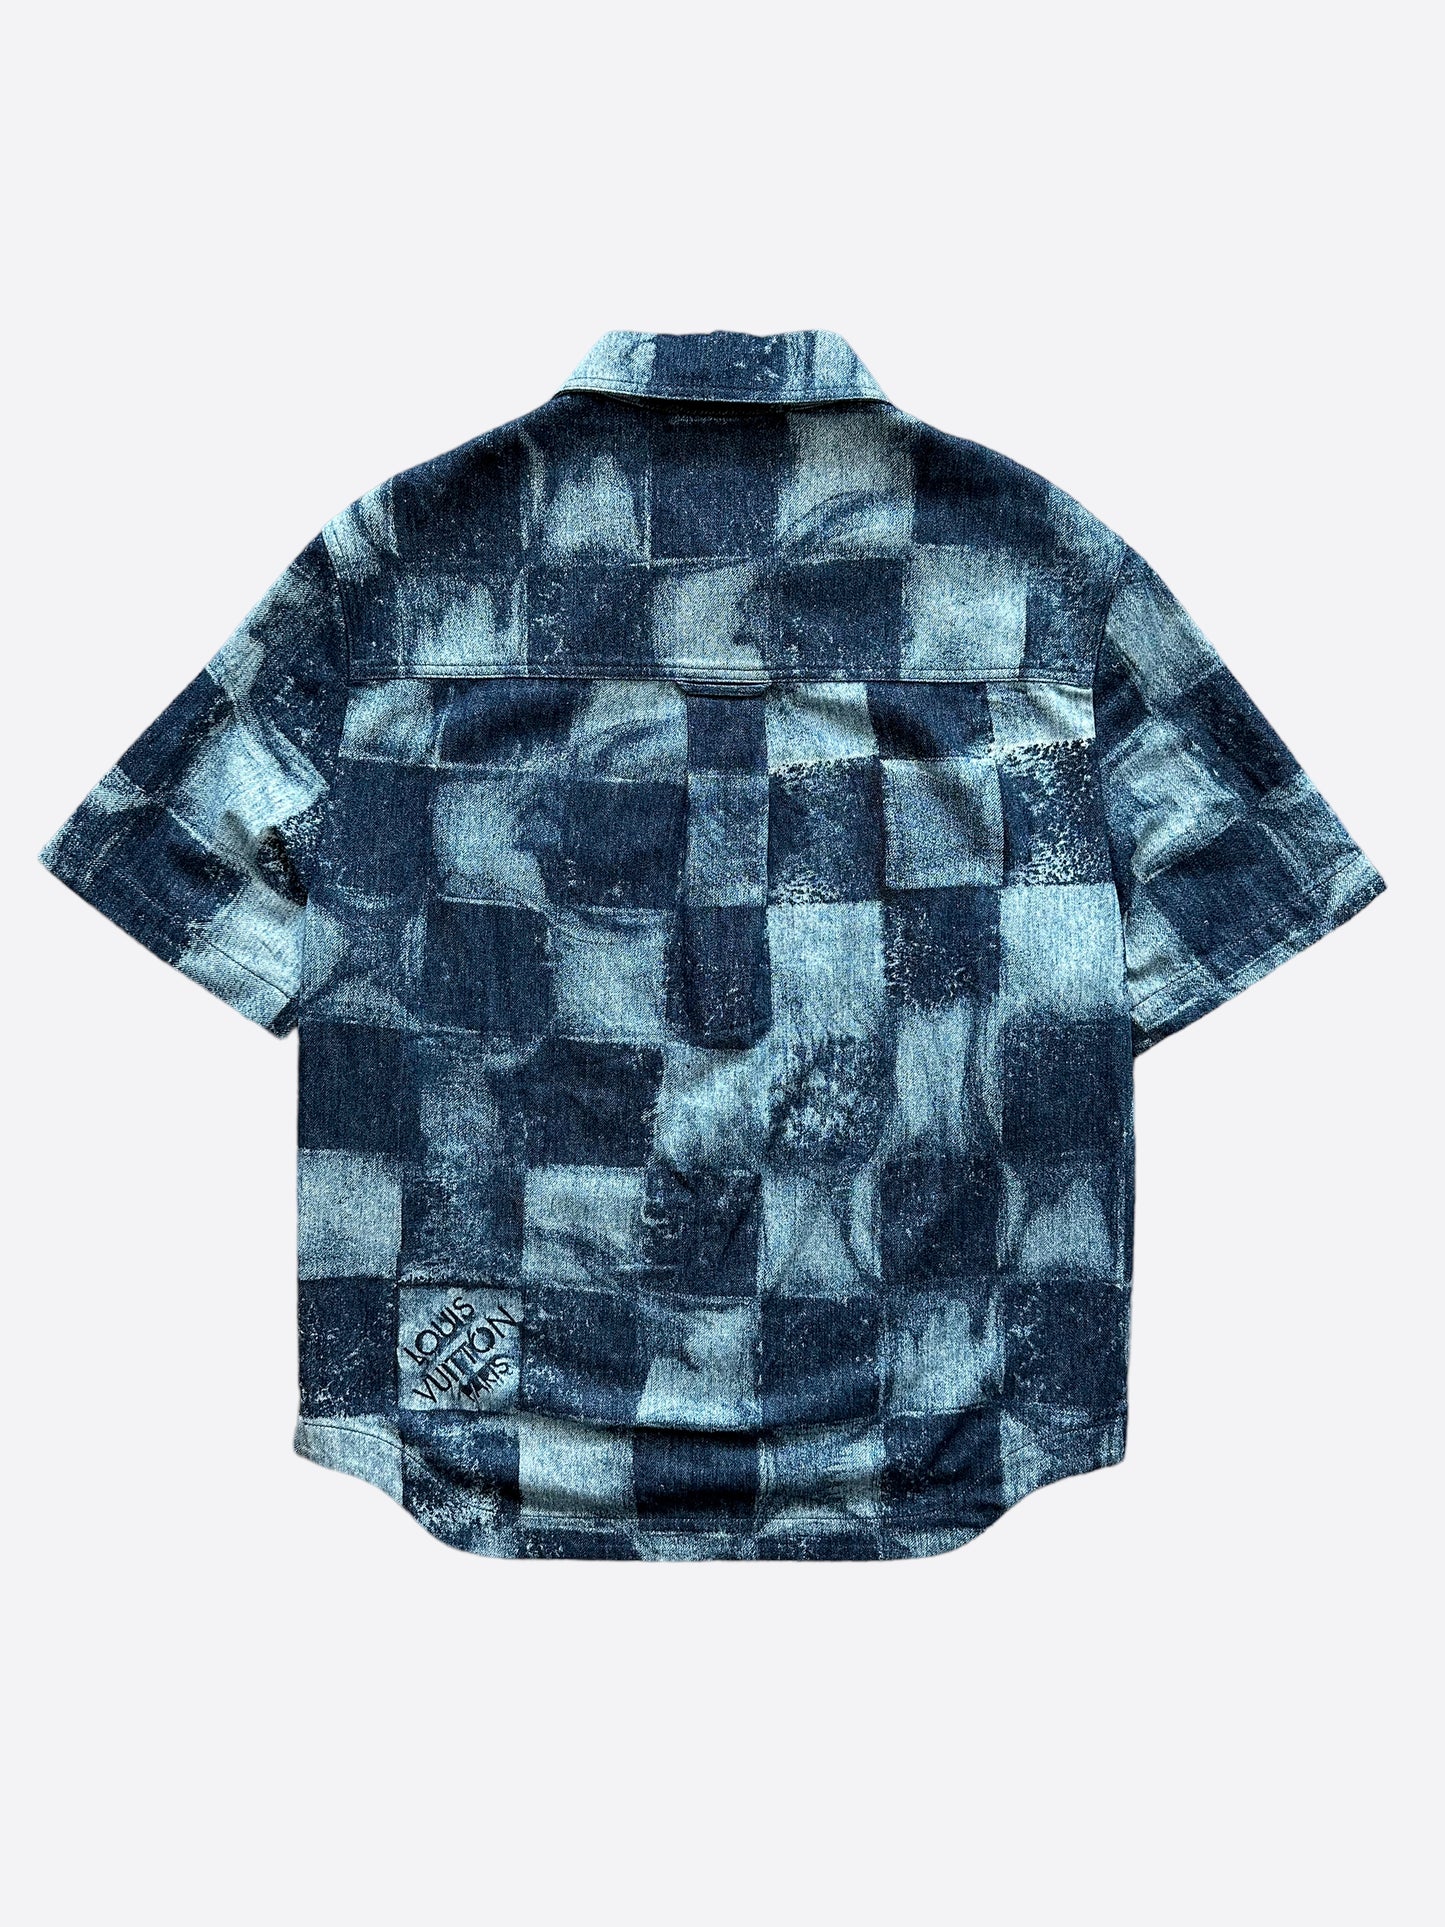 100% AUTHENTIC LOUIS Vuitton Damier Graphite Shirt Button Down Sz Xxl  $449.99 - PicClick